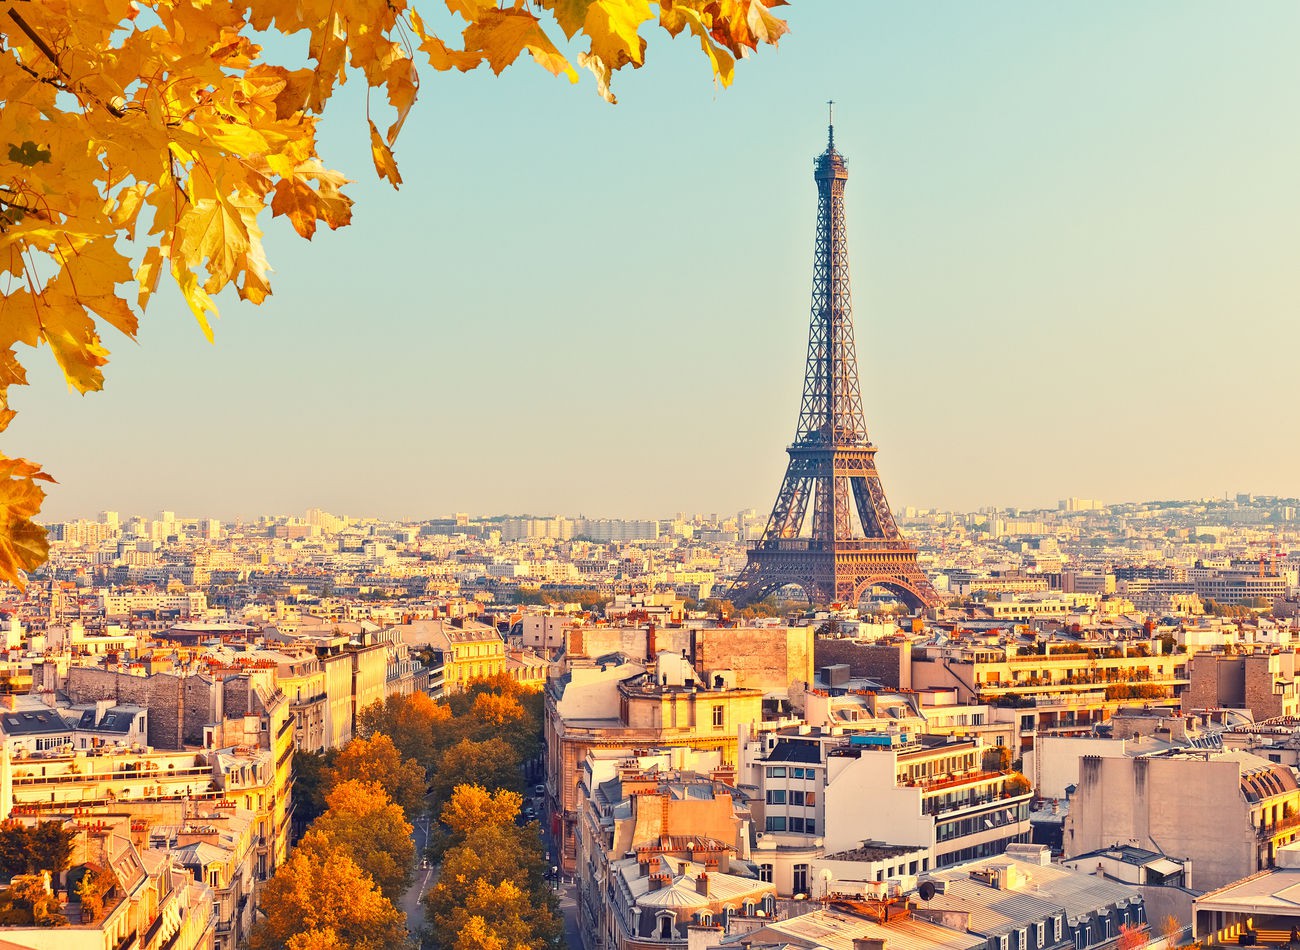 (Fransa / 82.6 milyon ziyaretçi) Her yıl dünyanın dört bir yanındaki milyonlarca insan, enfes mutfağı, tarihi mekanları ve güzel manzarası için Fransa’yı ziyaret ediyor. Paris, dünyanın en çok ziyaret edilen turistik yerlerinden biri. Paris’te bulunan Eyfel Kulesi en çok gidilen yerken St. Tropez, Chamonix ve Versay Sarayı ziyaretçi sayısı bakımından Eyfel’i takip ediyor.